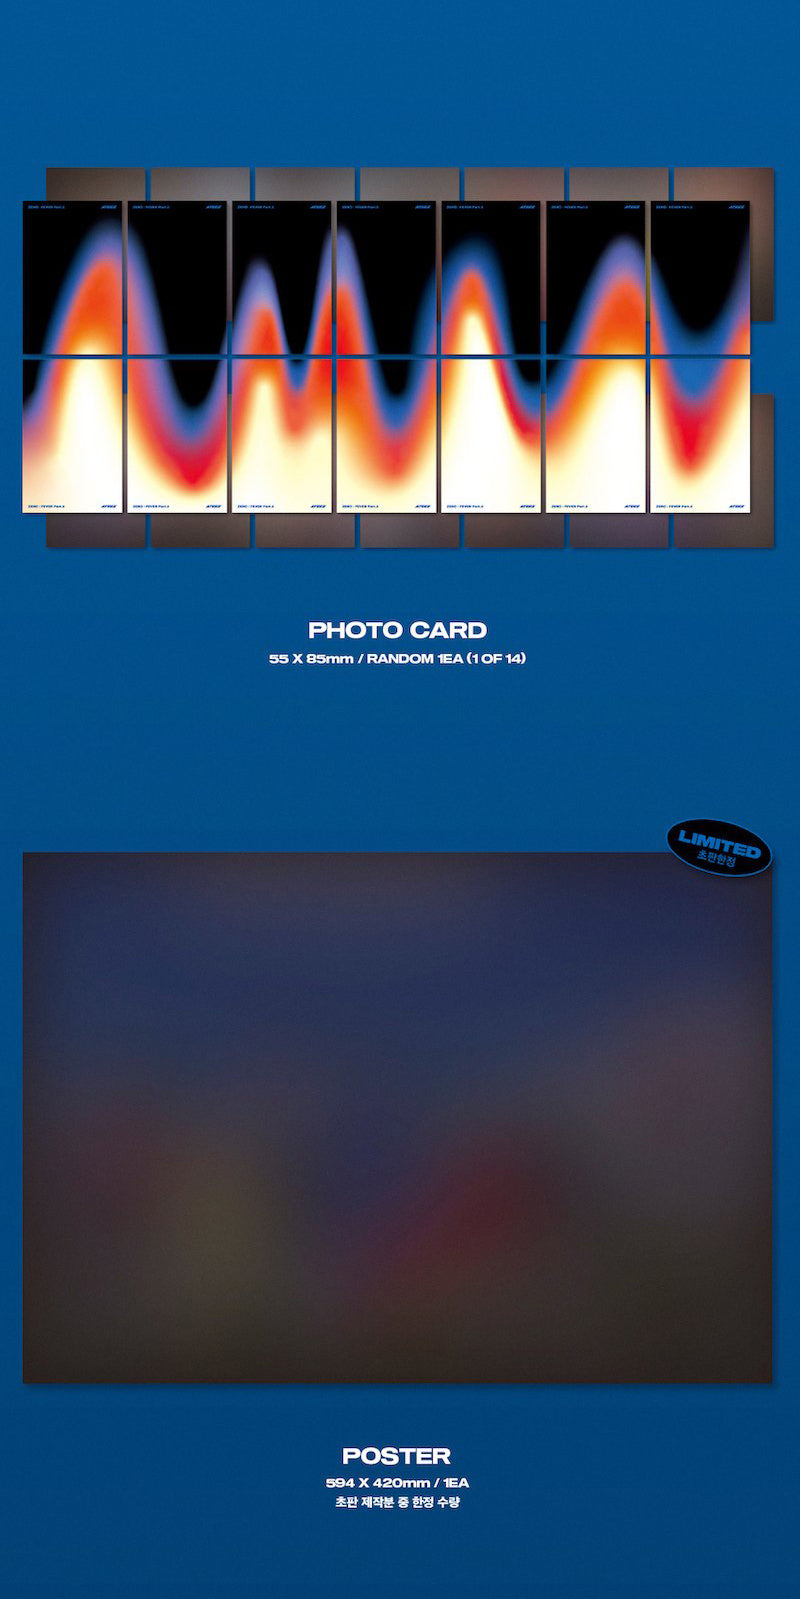 ATEEZ Mini Album Vol. 6 - ZERO: FEVER Part.2 (Random Version)